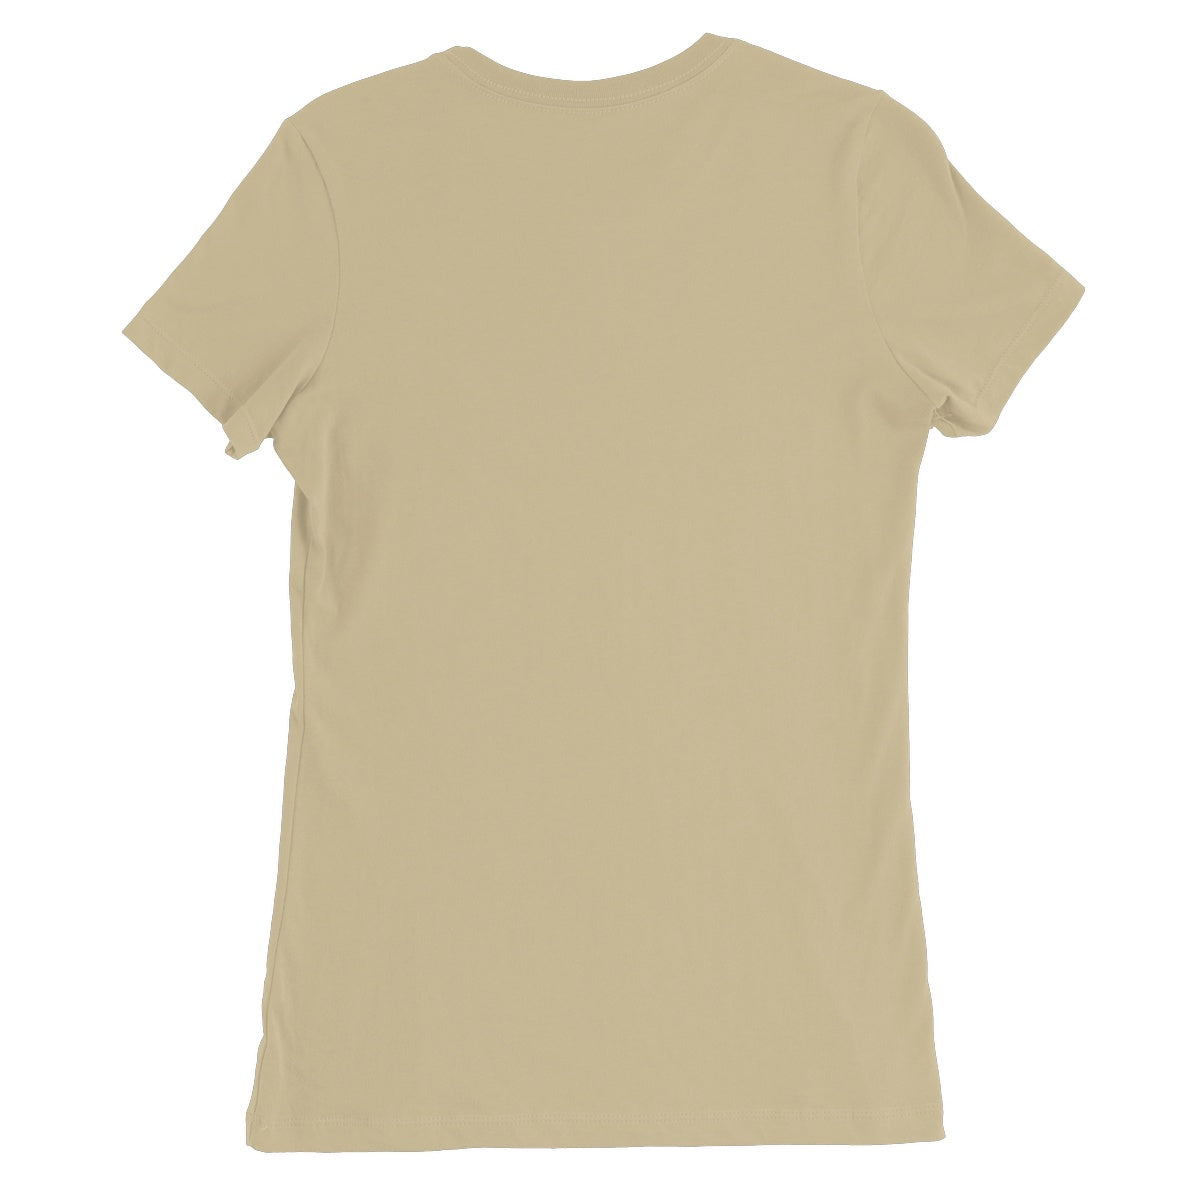 Metatron's Triple Yin Yang Women's Favourite T-Shirt